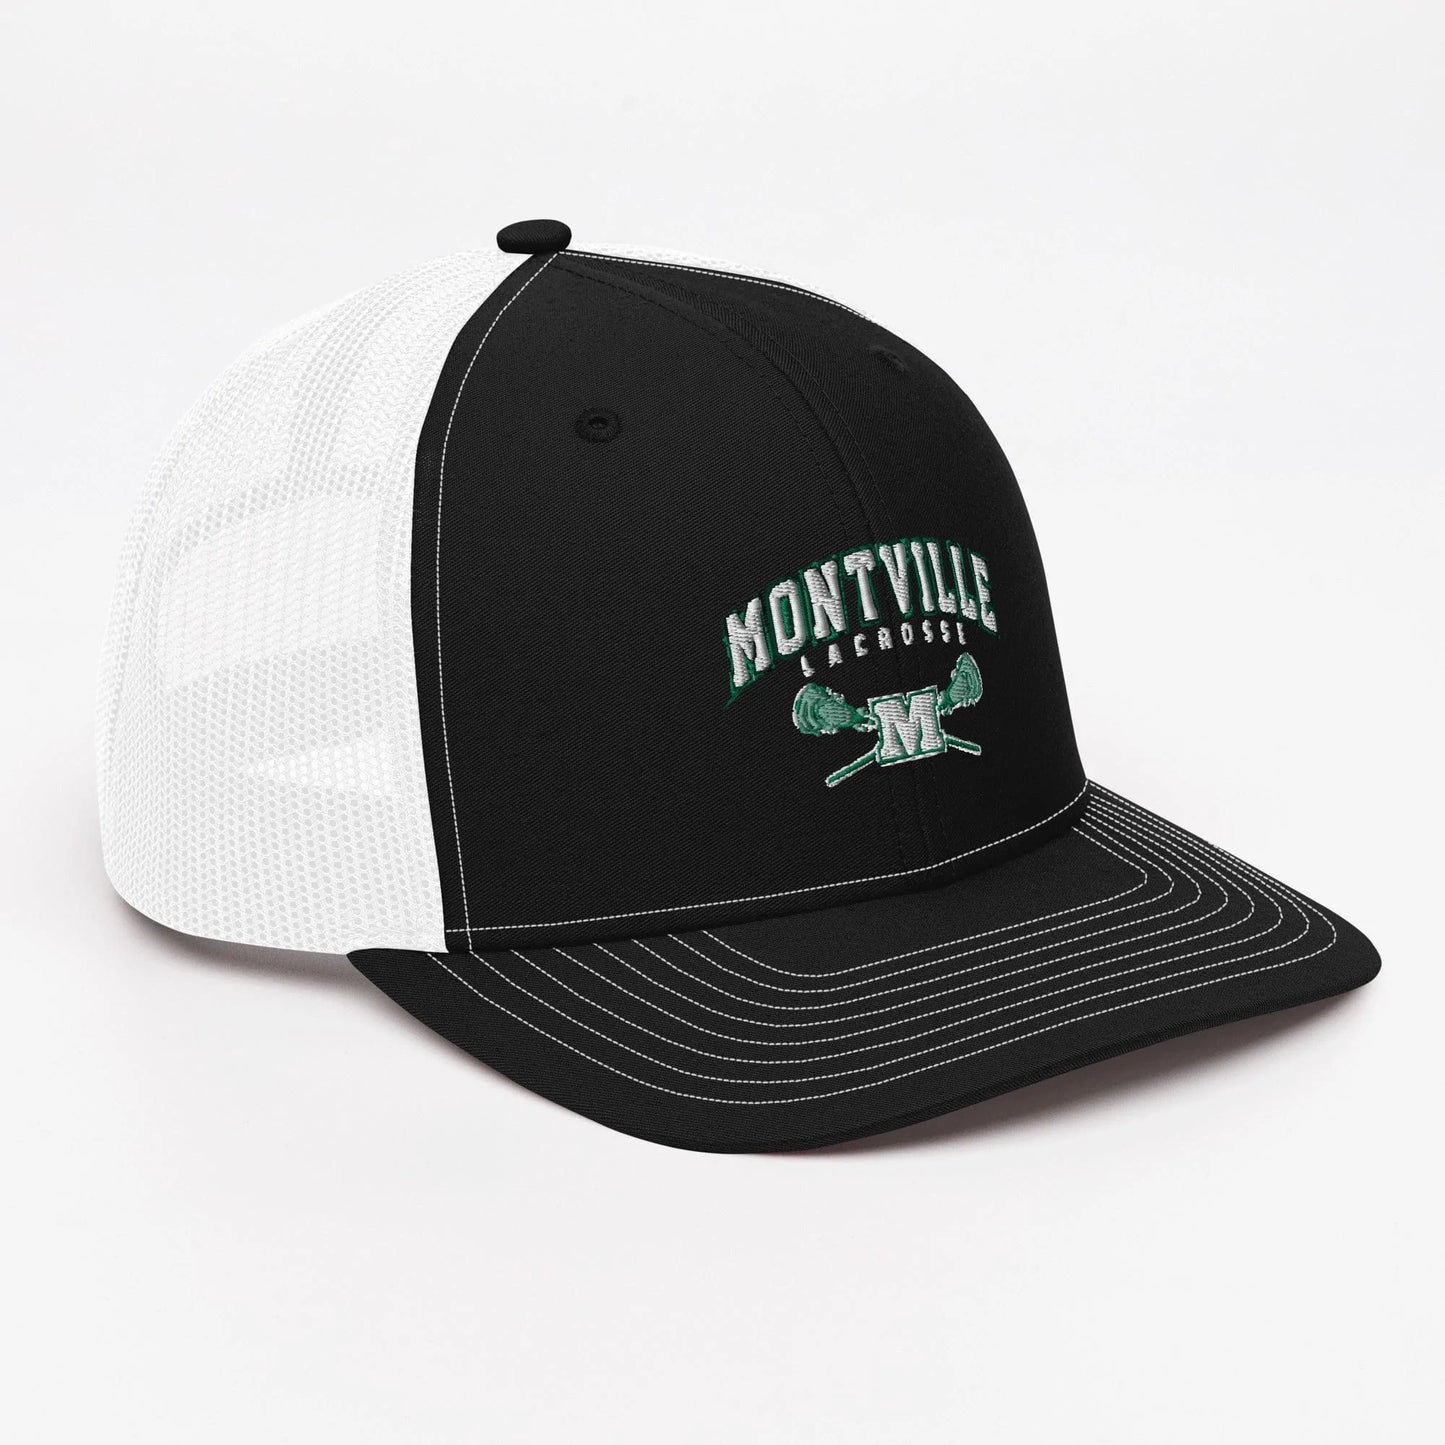 Montville Lacrosse Adult Richardson Trucker Hat Signature Lacrosse